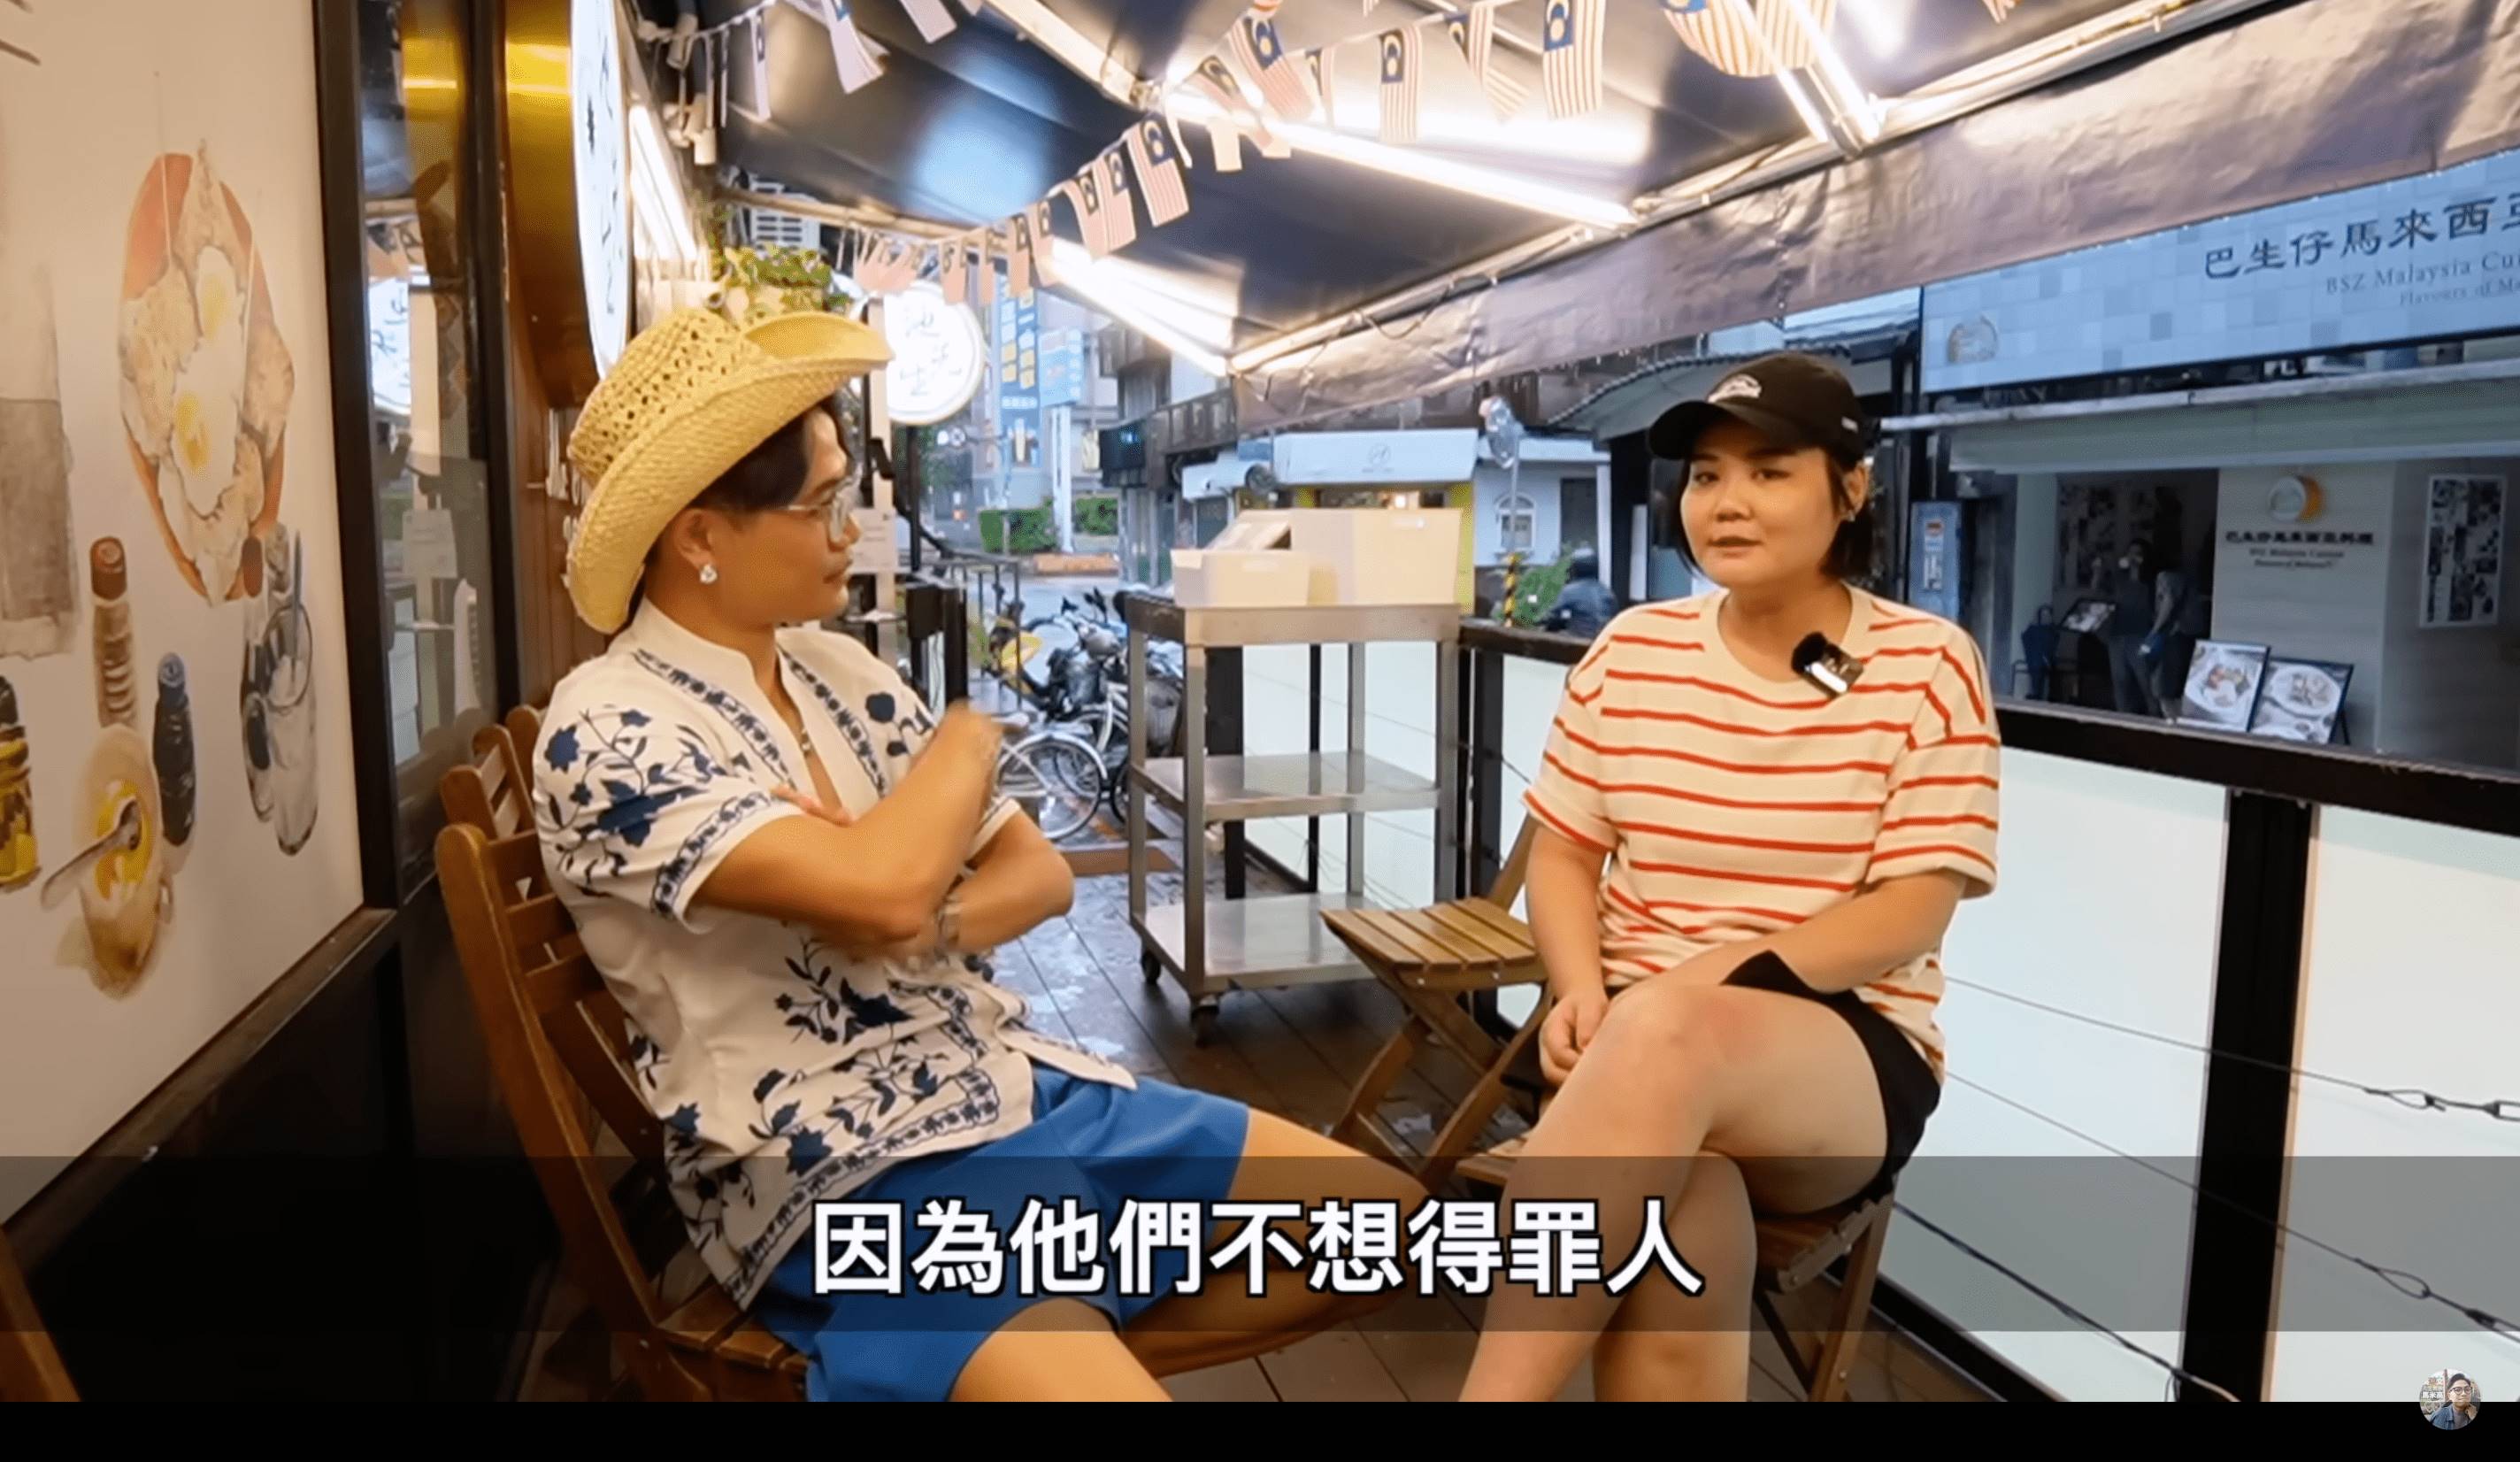 香港YouTuber馬米高近日在頻道上發布影片，影片中馬米高與移民來台的香港人Jenny談到來台灣後的文化衝突與不易處，影片中也指出他們認為台灣人的缺點，包括「講話很假」、「死不認錯」等，並表示「來台灣定居要三思」。